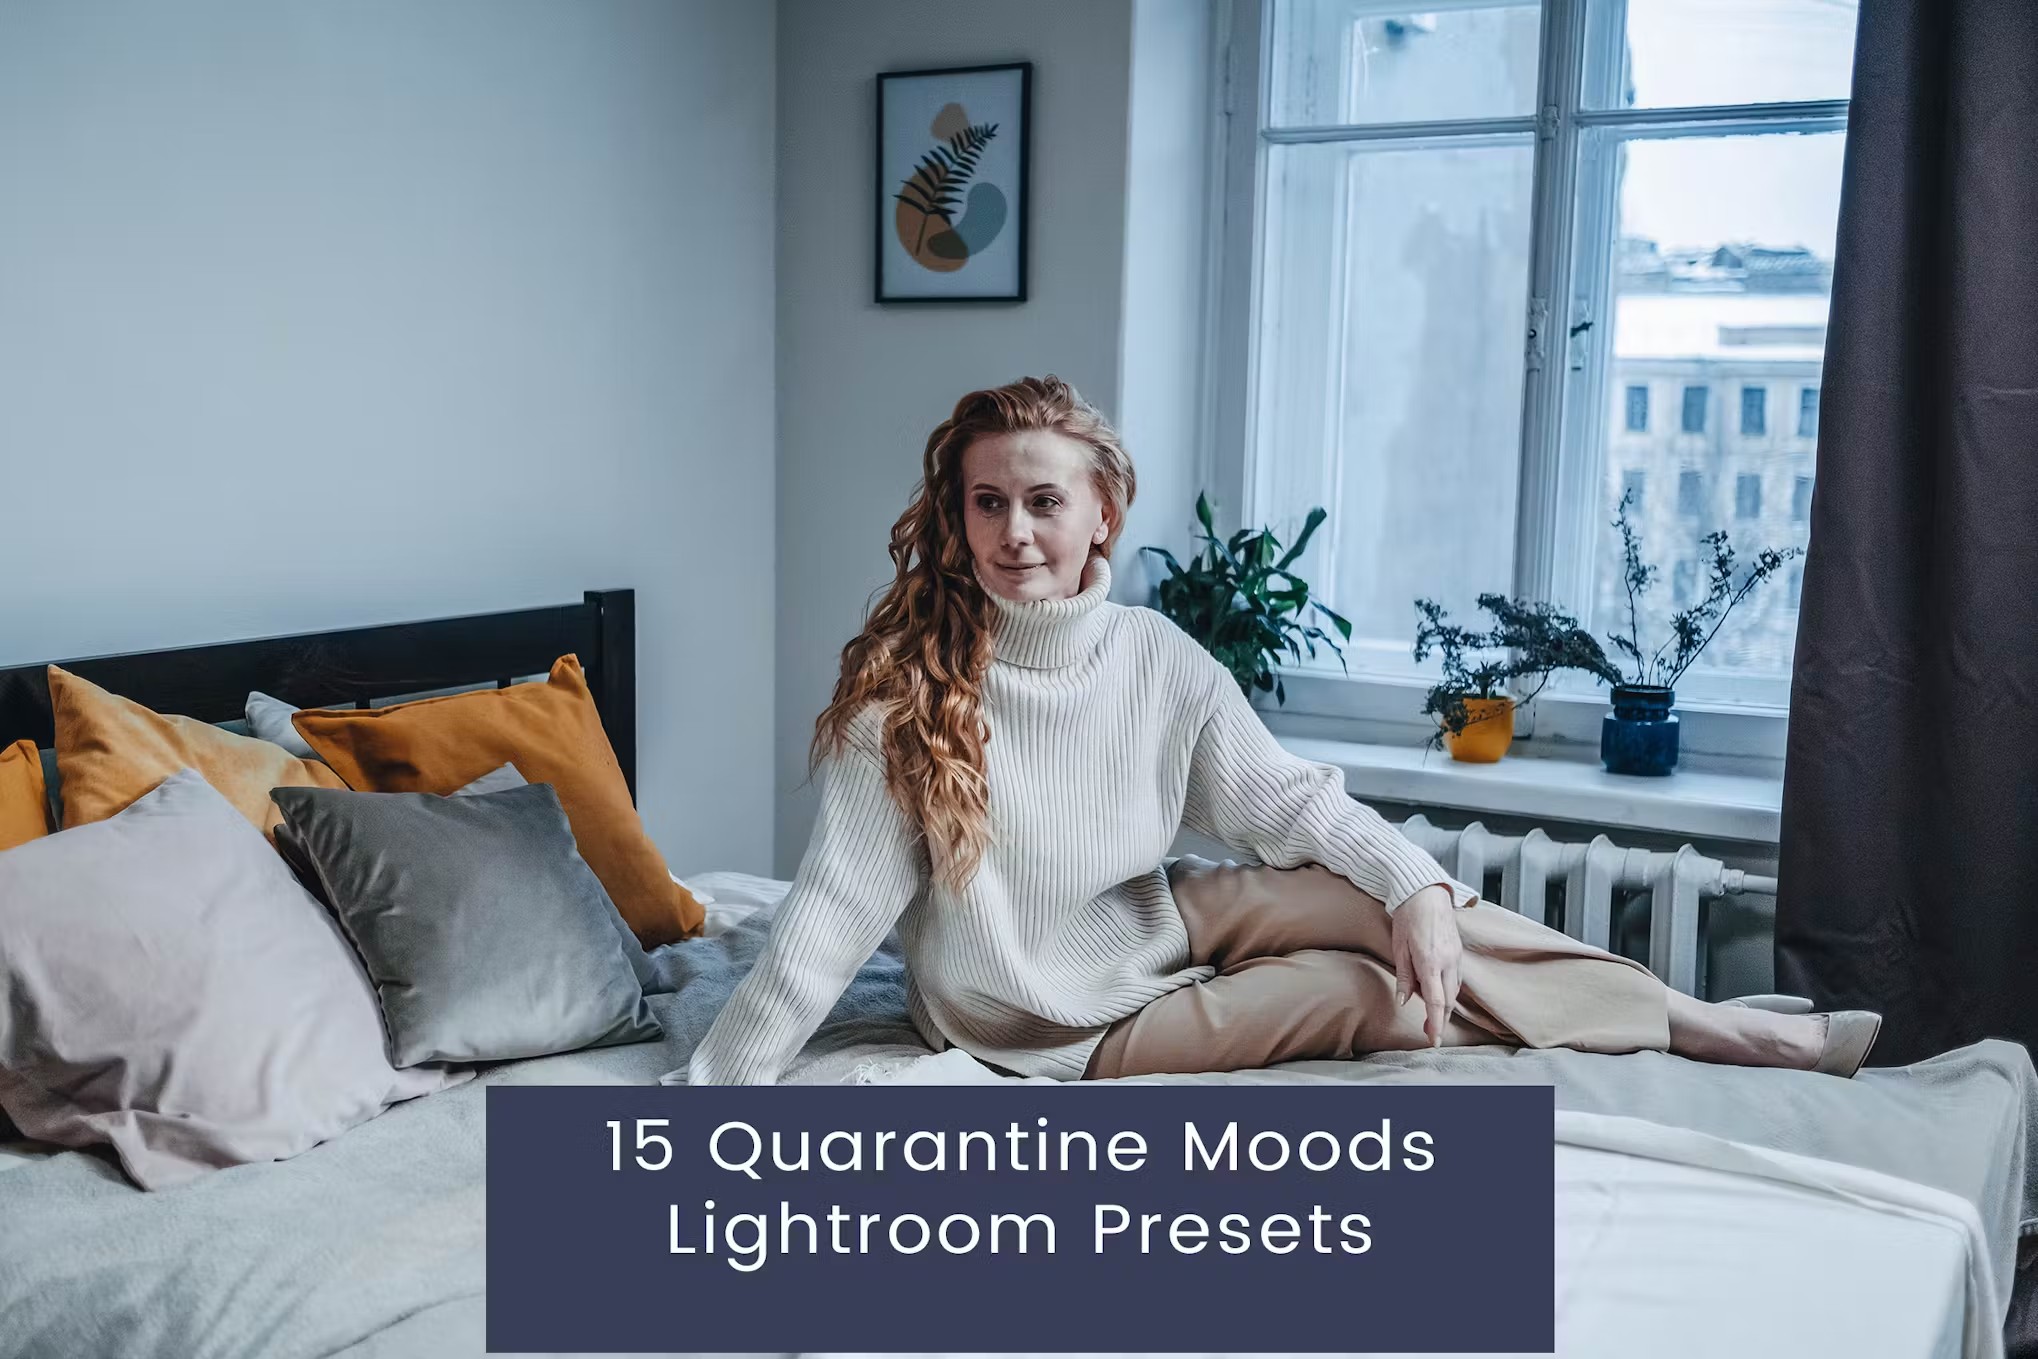 隔离情绪人像心情美学摄影后期调色Lightroom预设 15 Lightroom Presets für Quarantäne-Stimmungen 插件预设 第1张